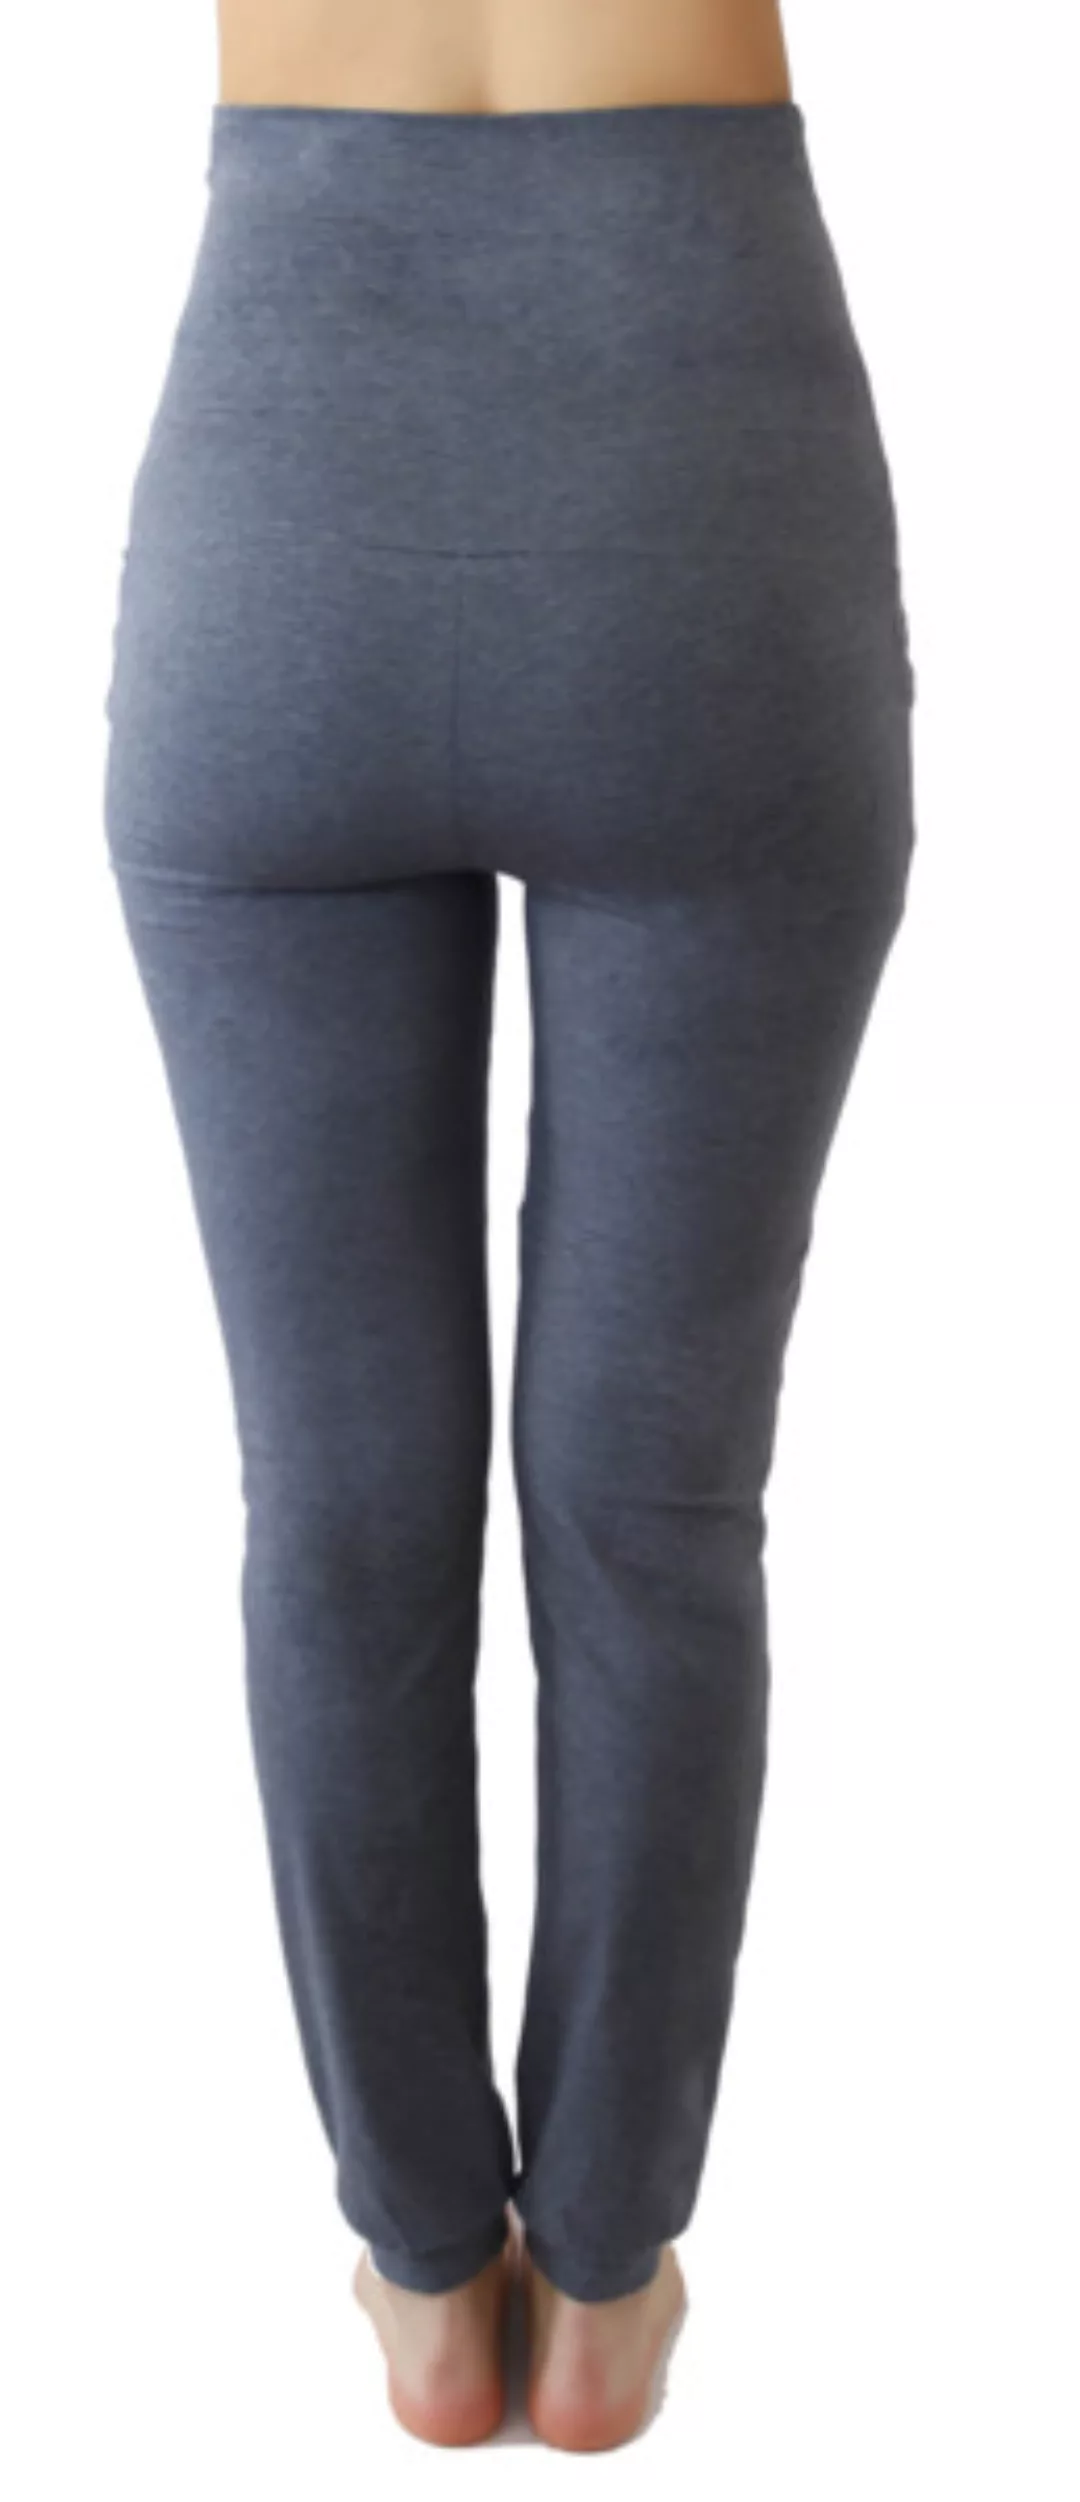 Damen Yogahose Bio-baumwolle Trainingshose Sporthose Fußbündchen 4062 günstig online kaufen